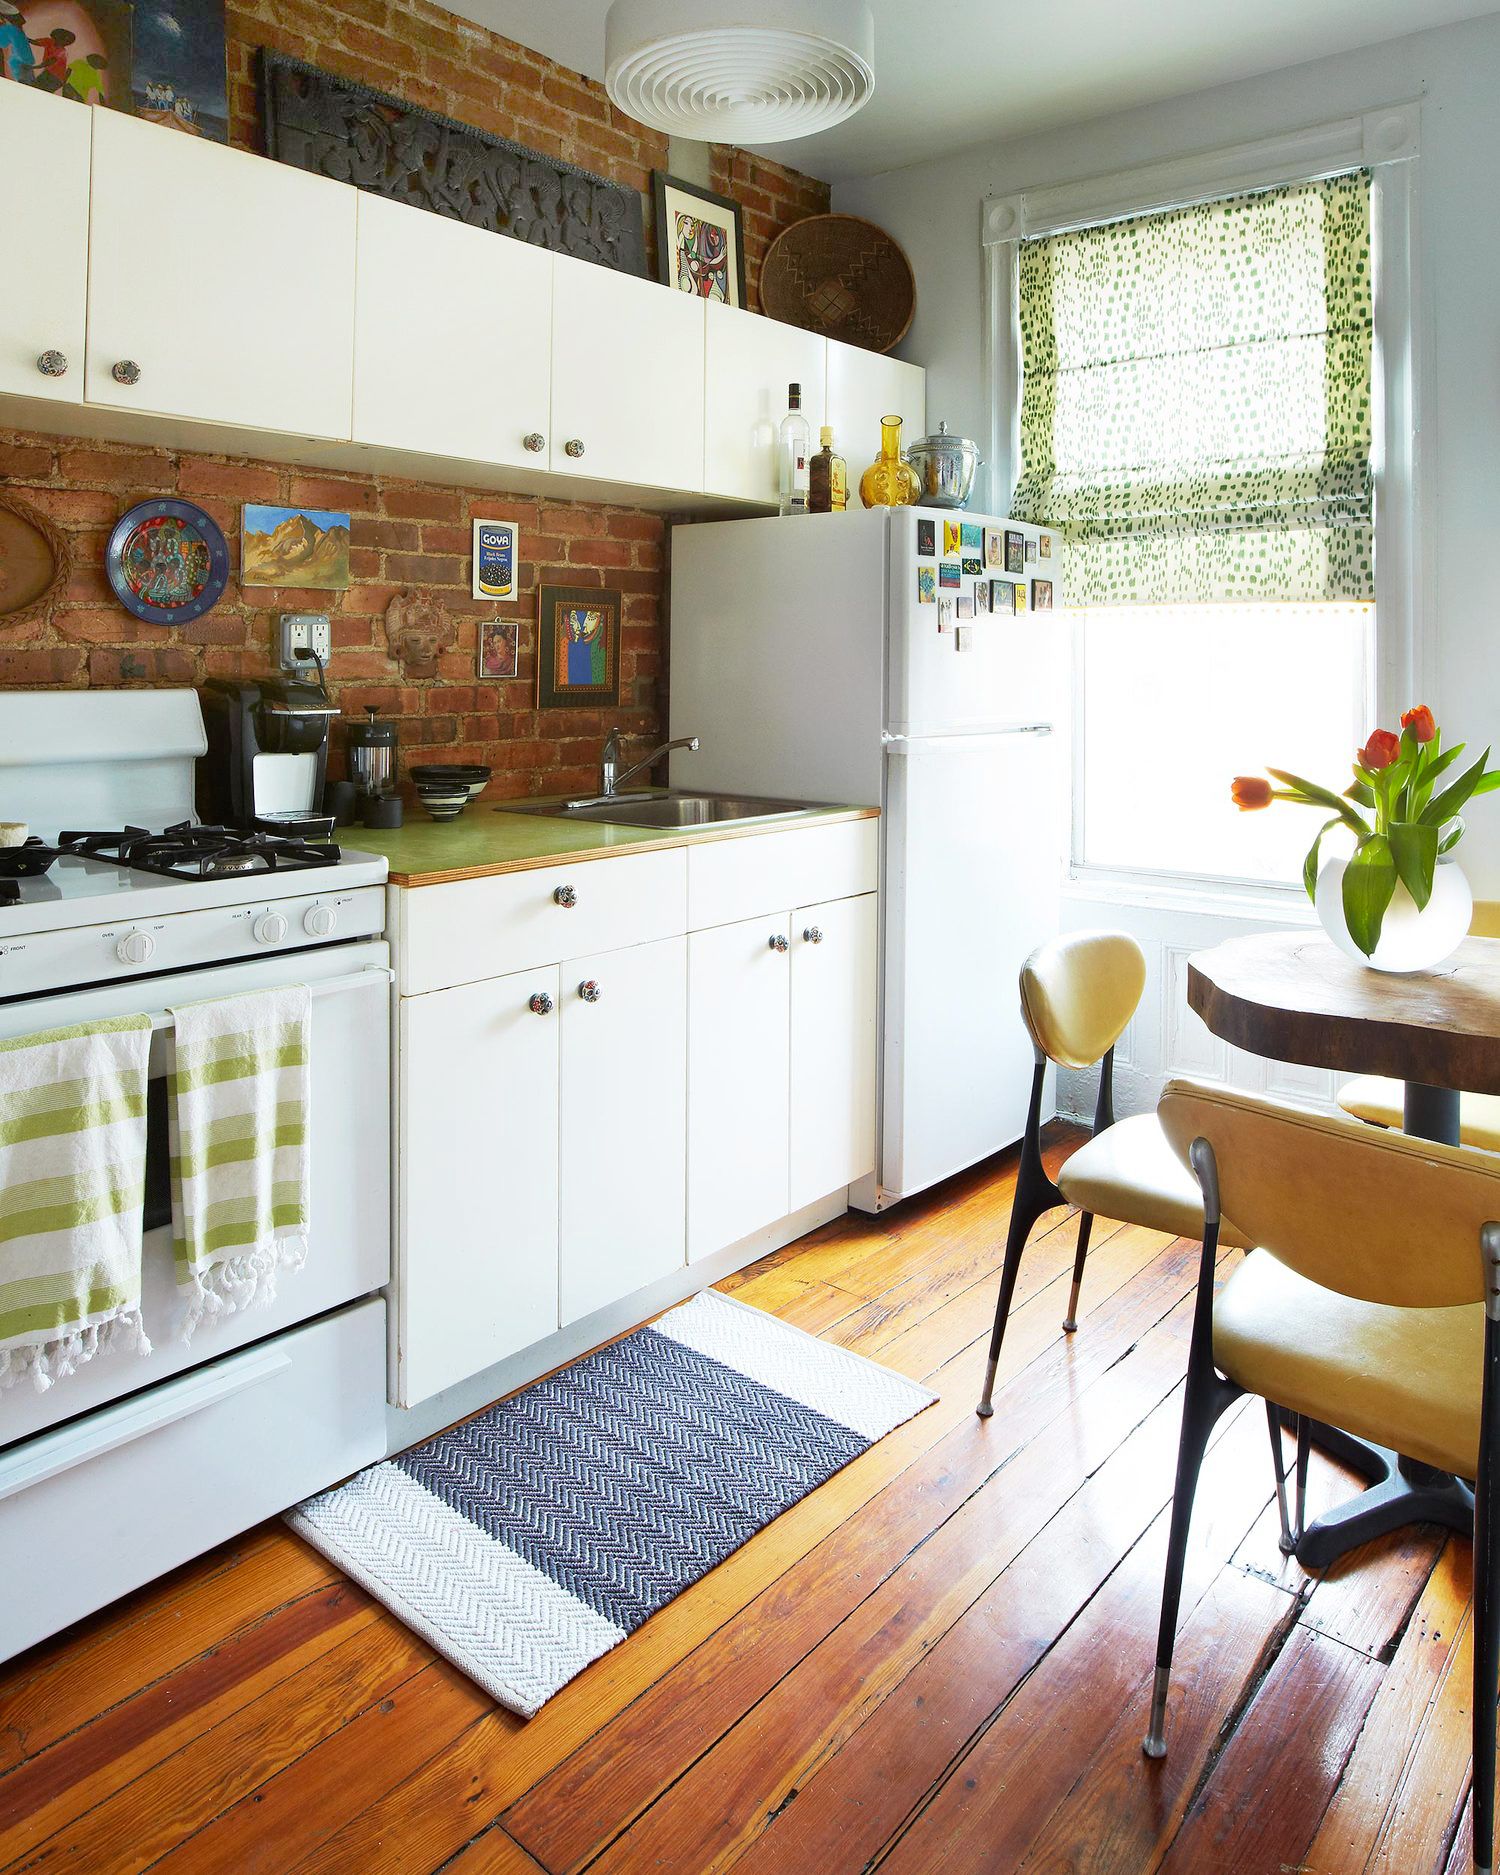 55 Best Kitchen Backsplash Ideas Tile Designs For Kitchen Backsplashes